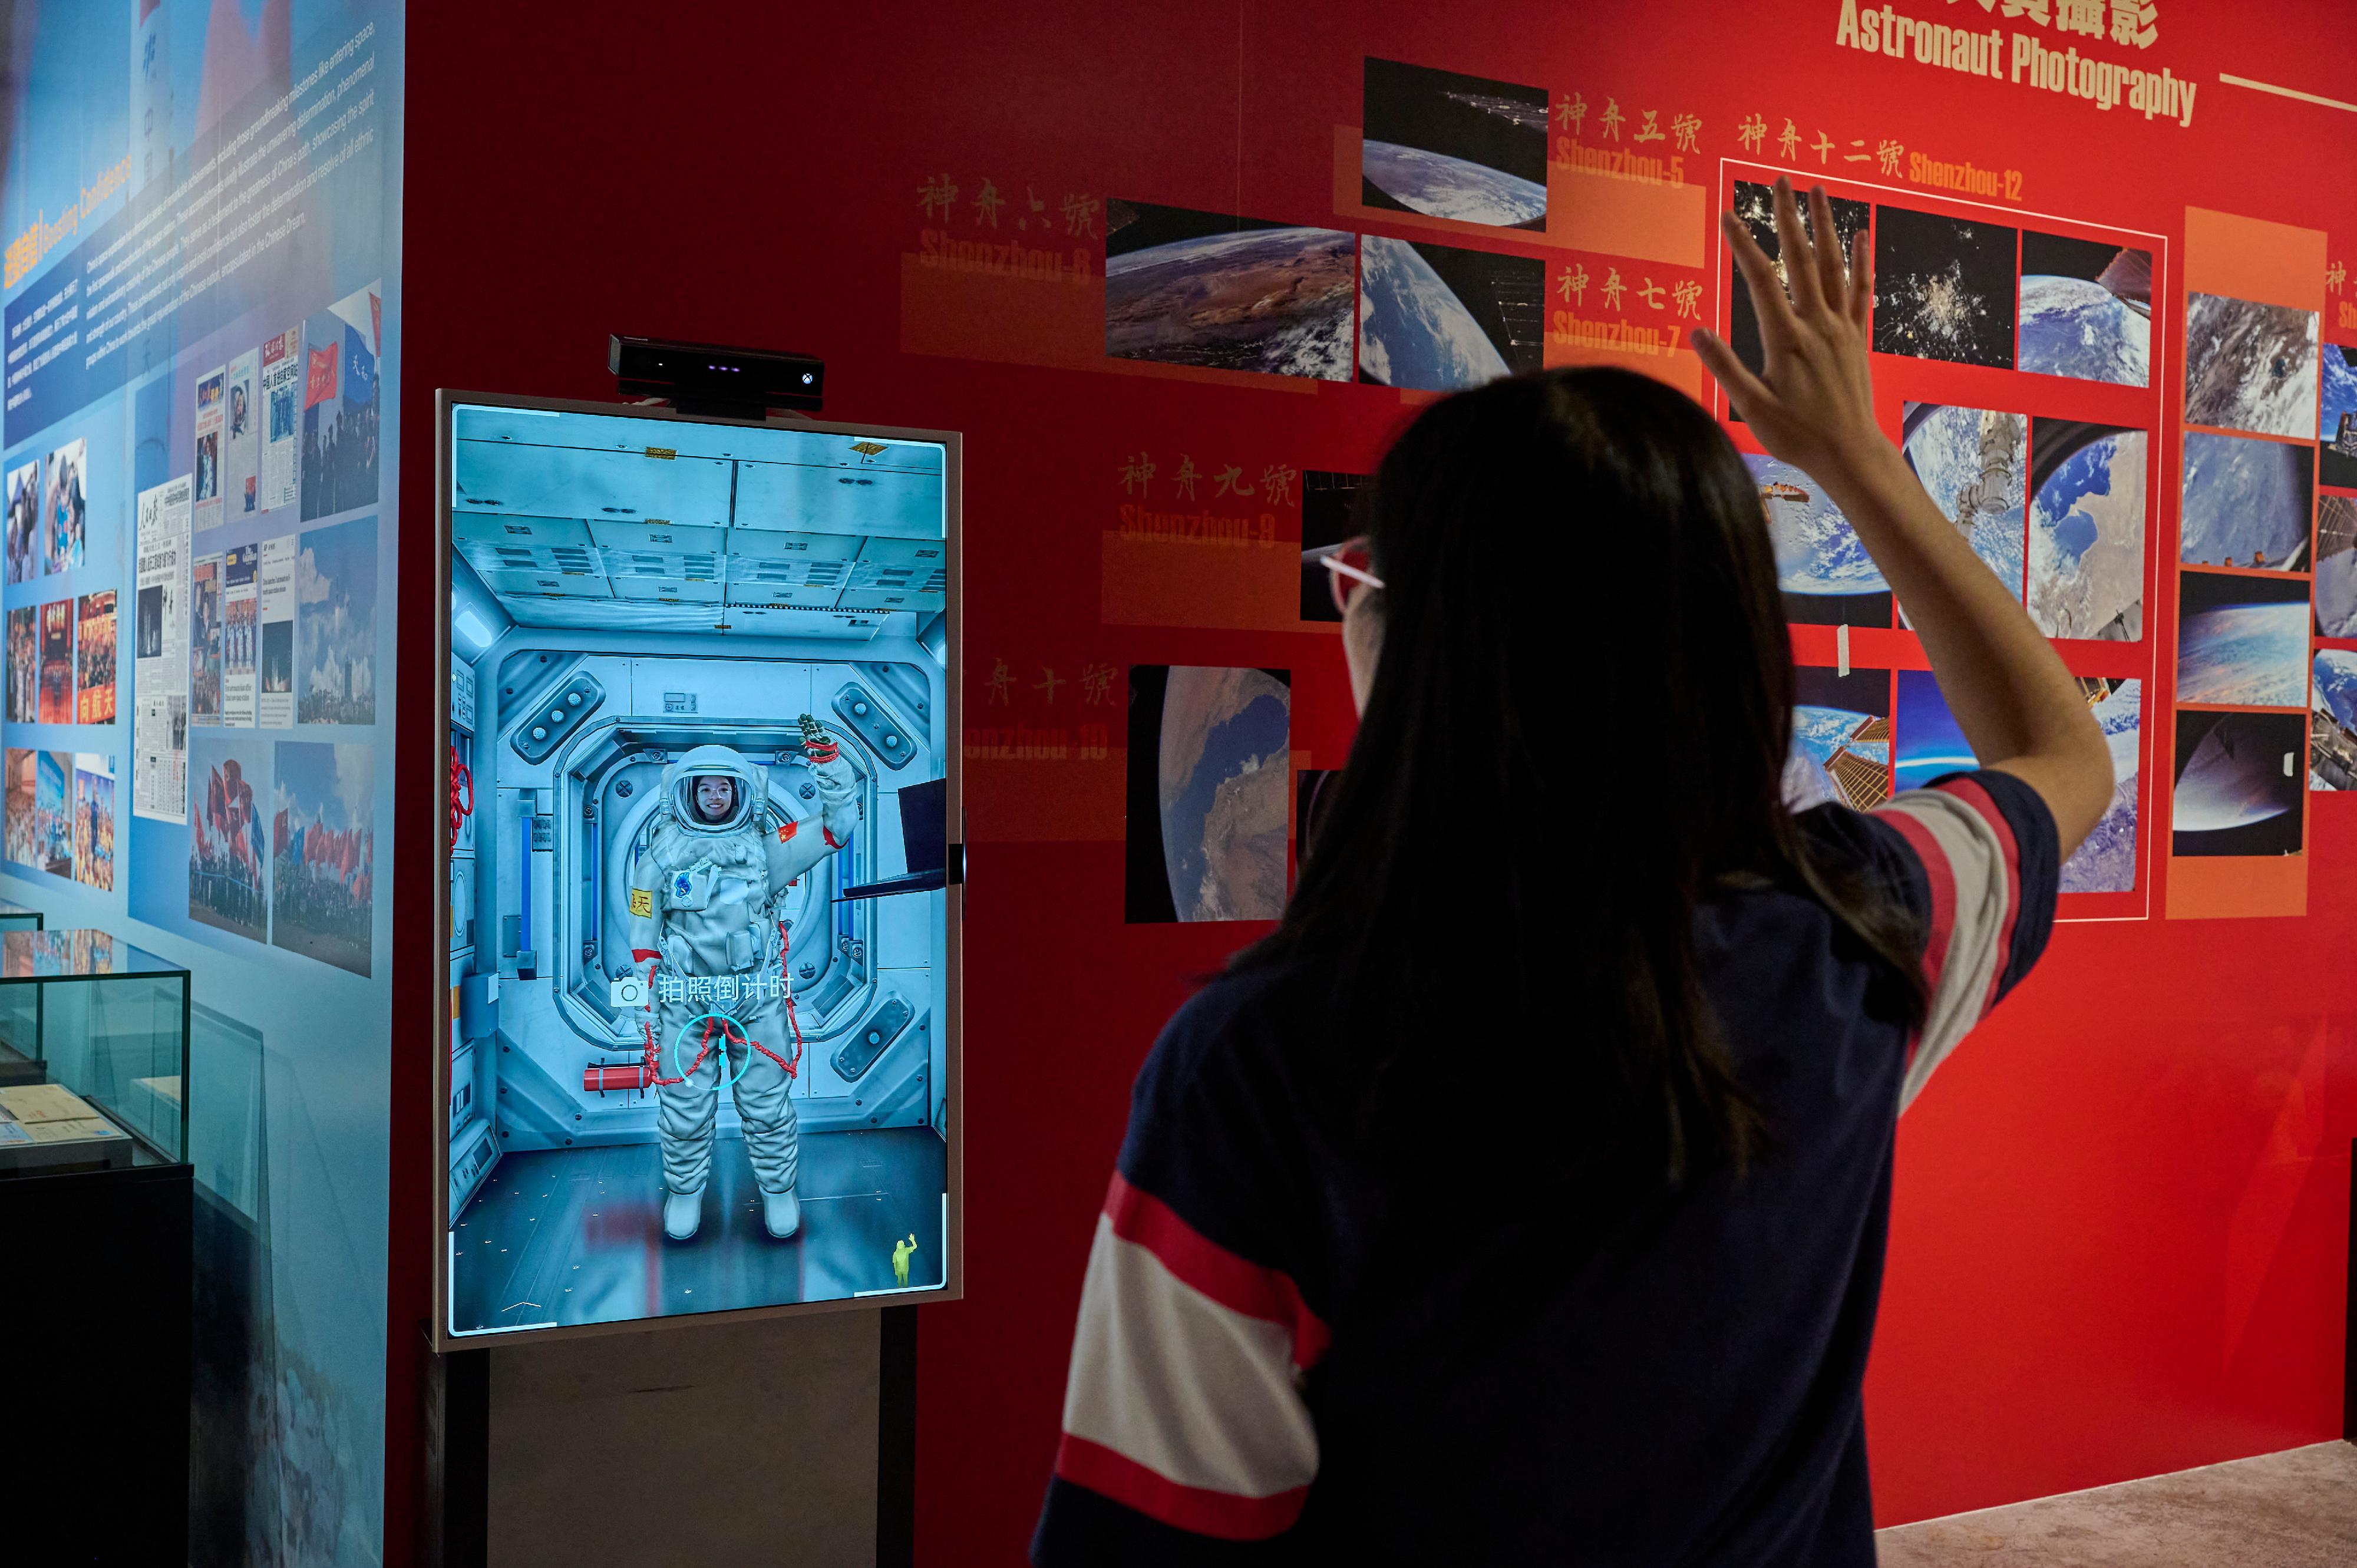 中国载人航天工程展明日（十二月一日）起至明年二月十八日在香港科学馆和香港历史博物馆举行。图示观众在「太空照相馆」穿上虚拟航天服，在空间站舱内和舱外拍摄相片留念。
